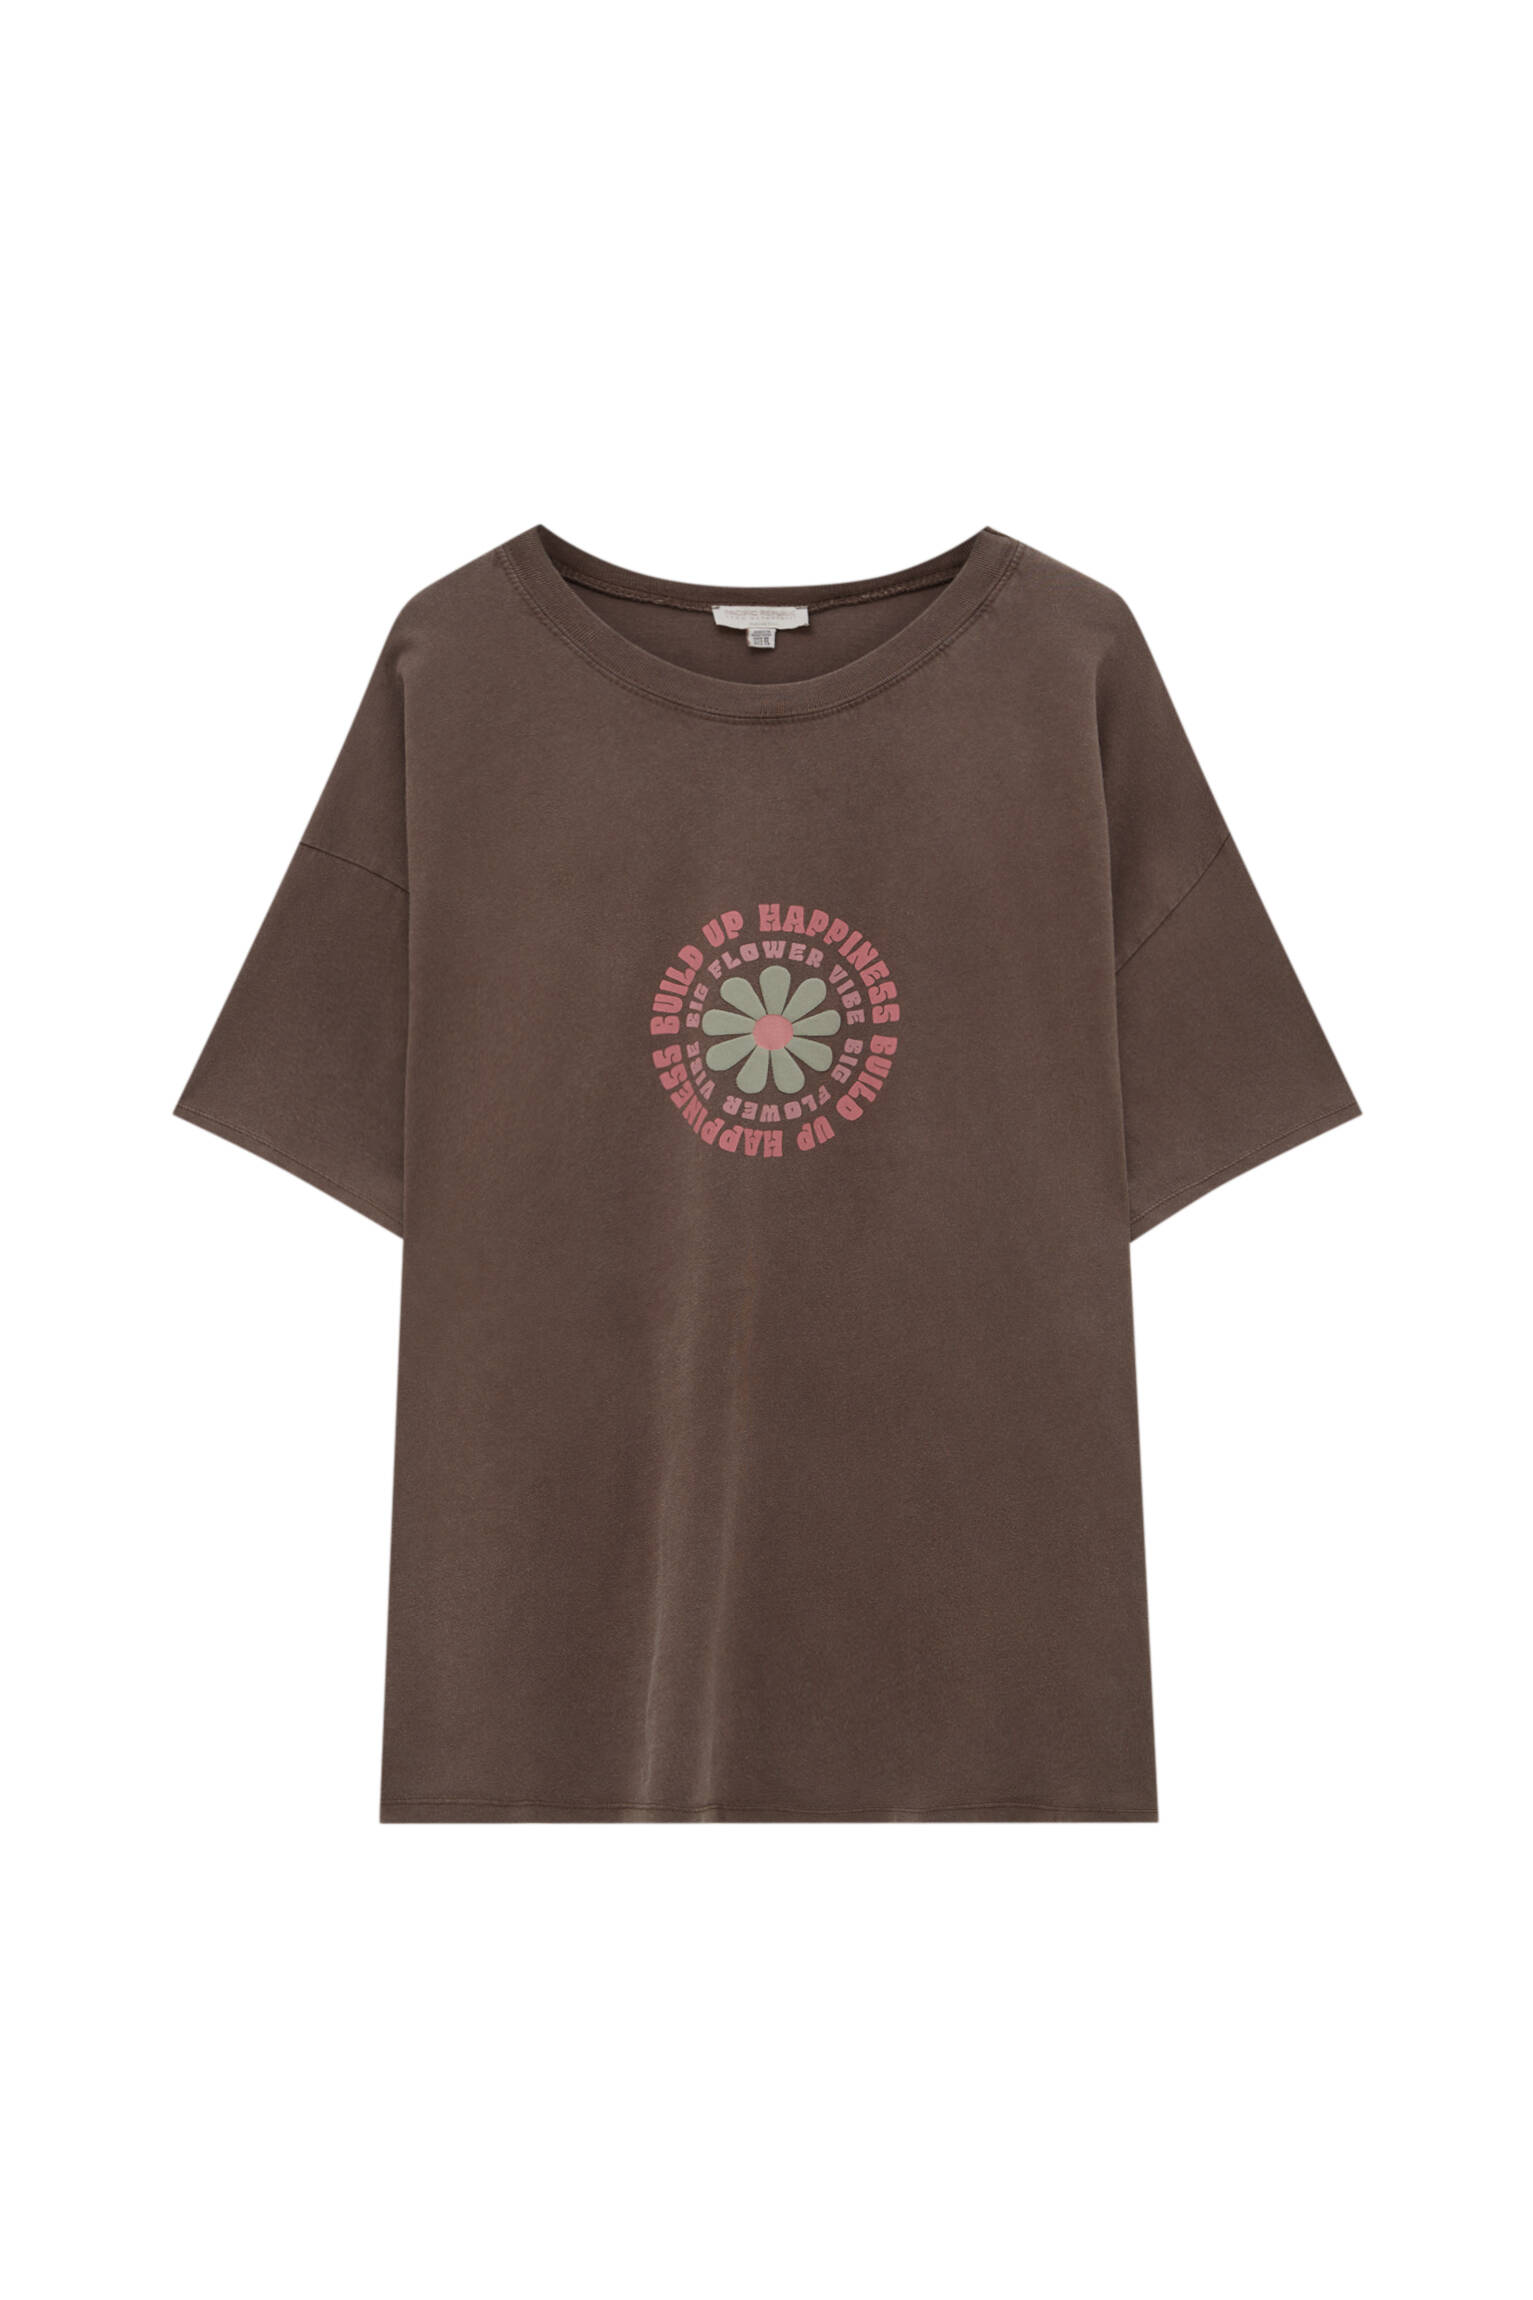 Pull&bear Femme T-shirt à Imprimé Floral, Col Rond Et Manches Courtes. Marron Sombre Xl